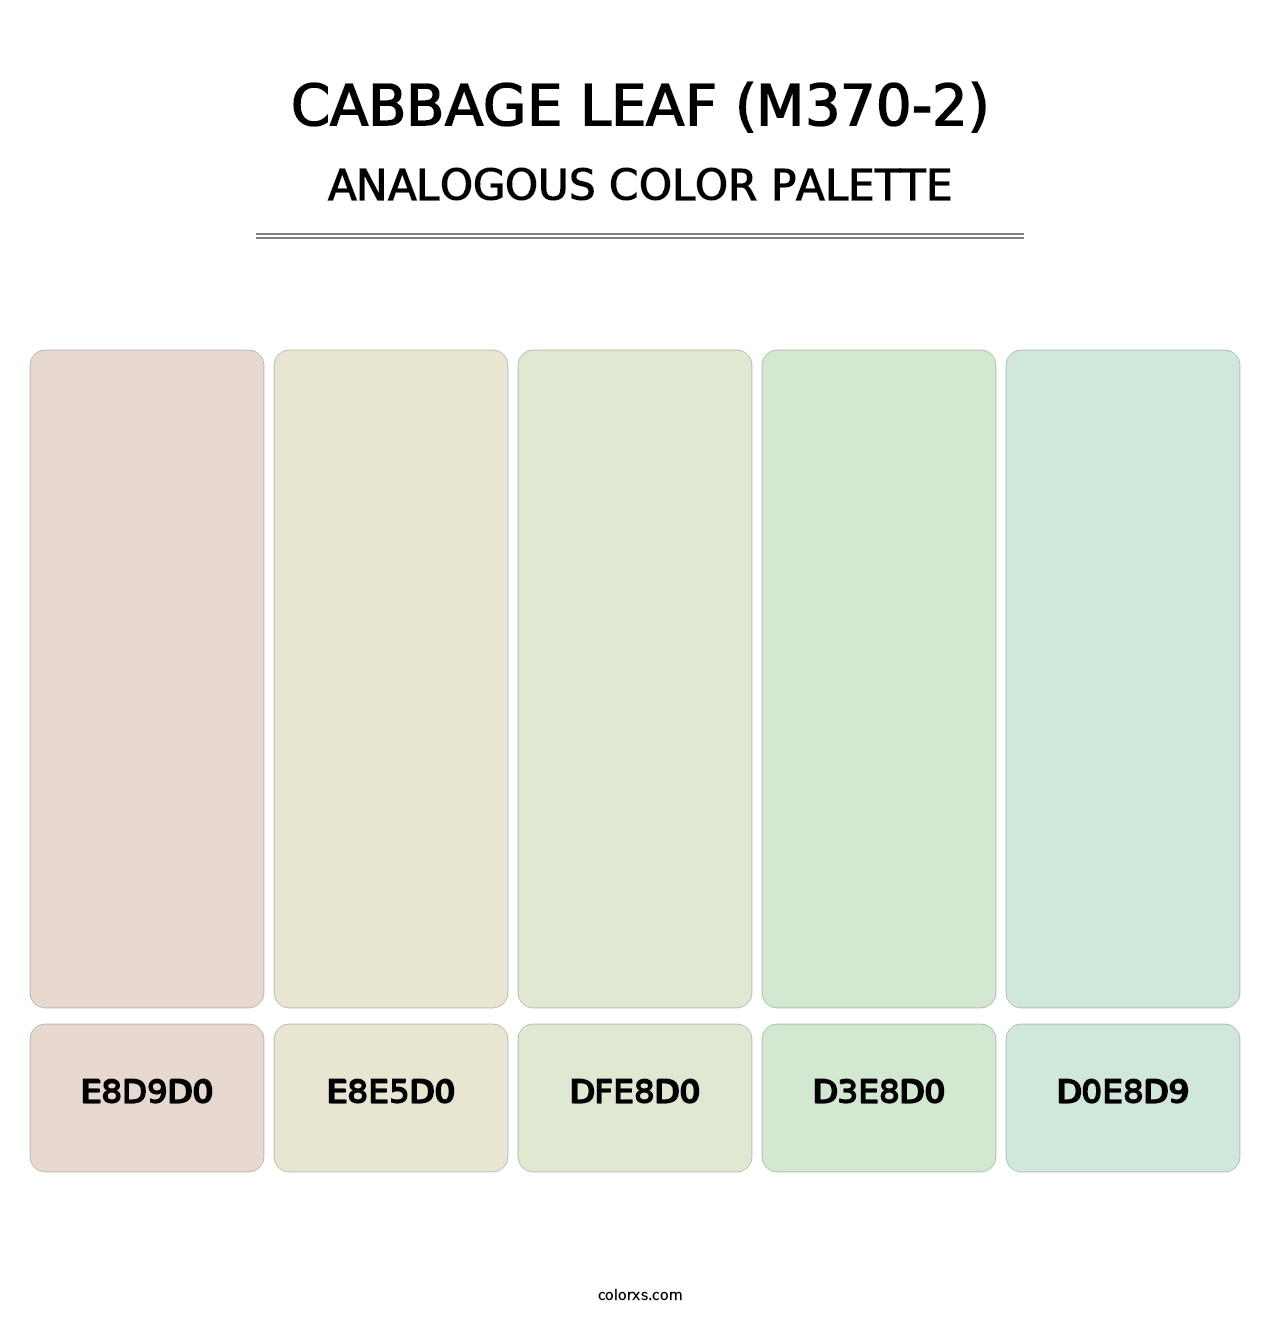 Cabbage Leaf (M370-2) - Analogous Color Palette